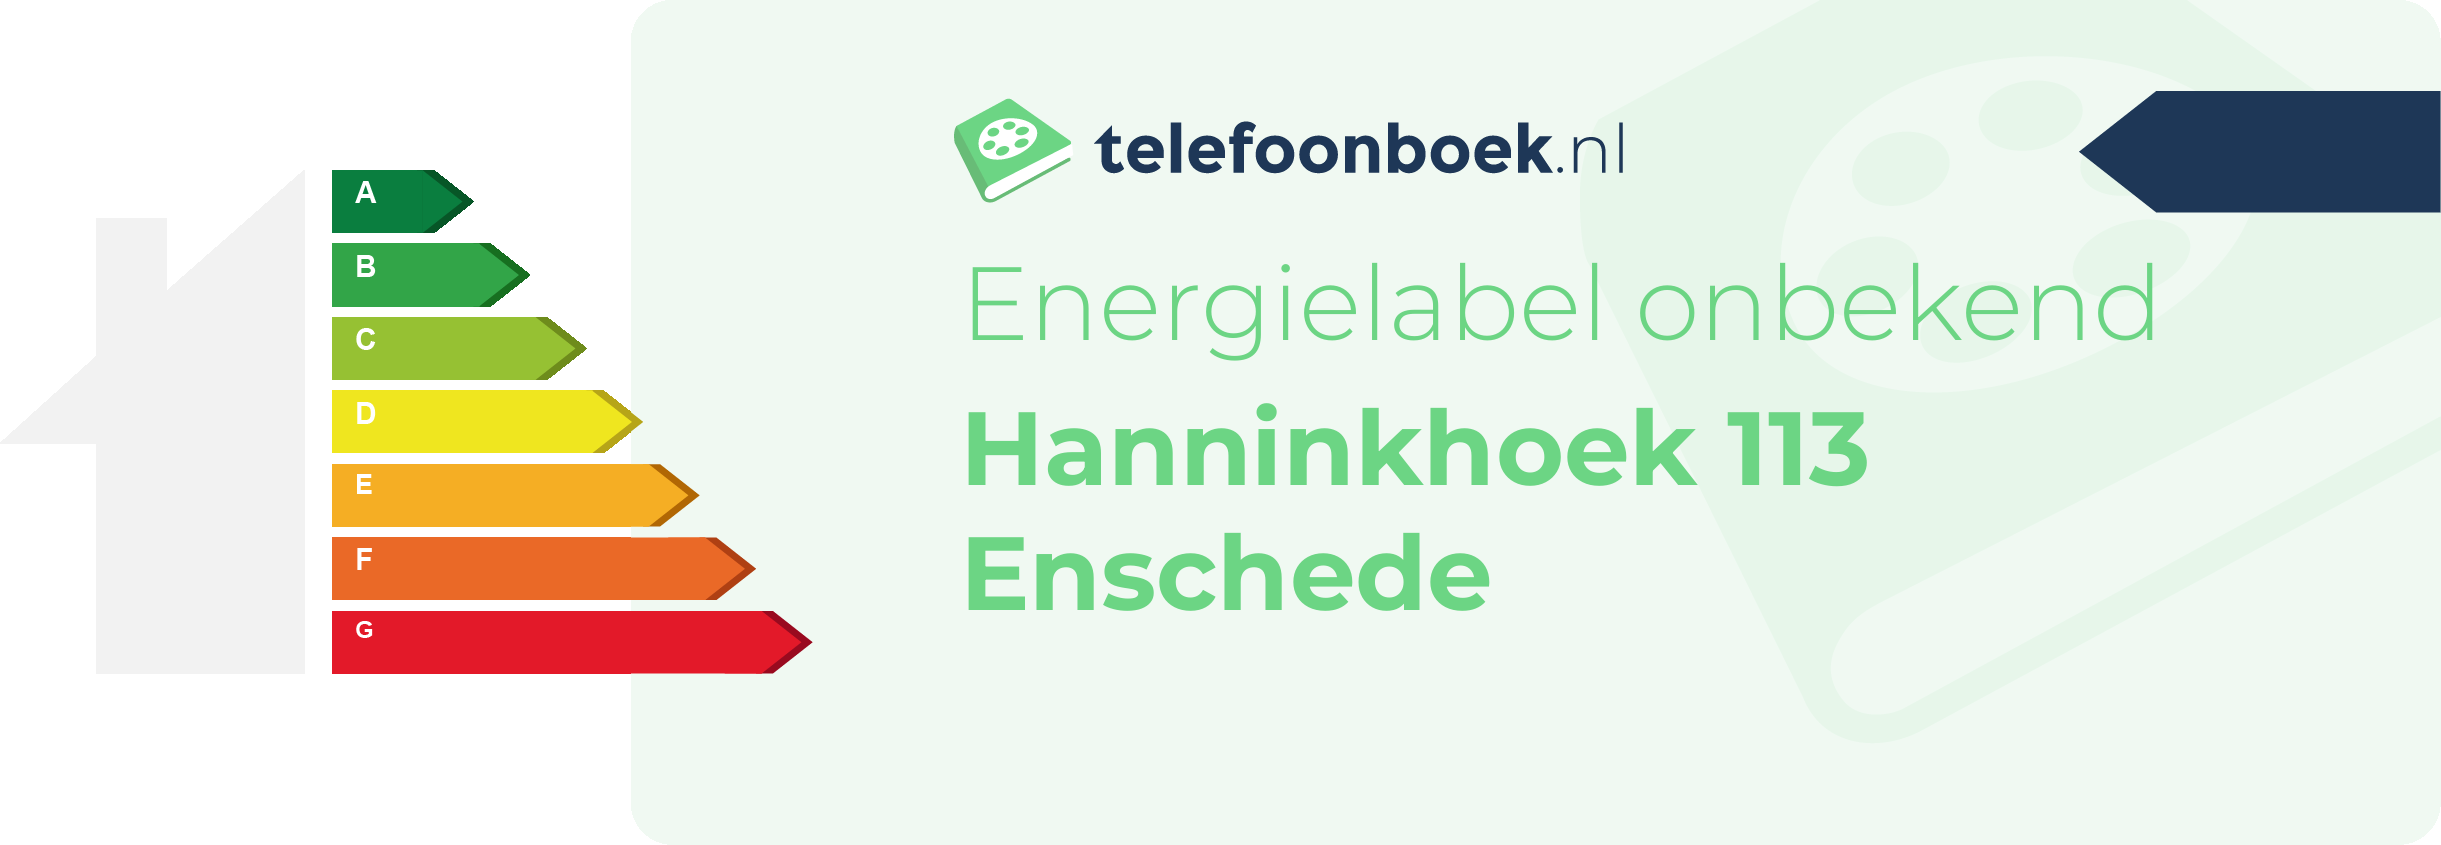 Energielabel Hanninkhoek 113 Enschede